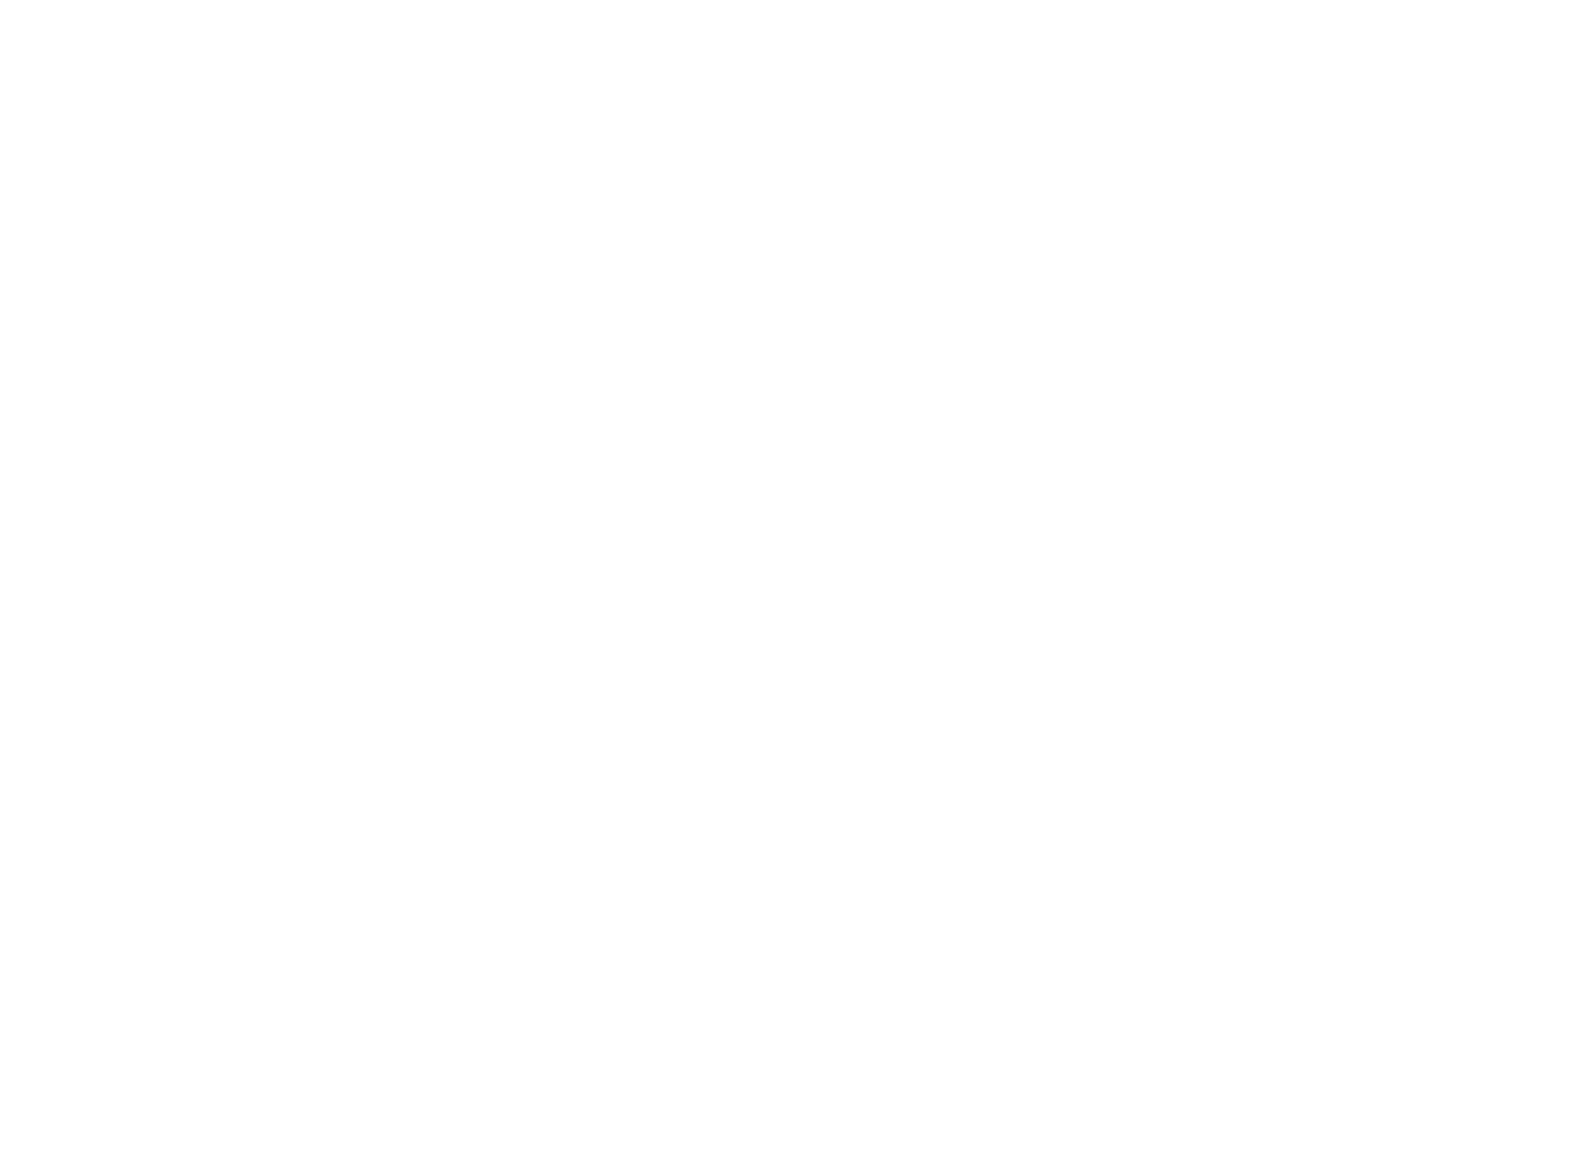 Ariel Déniz-Robaina